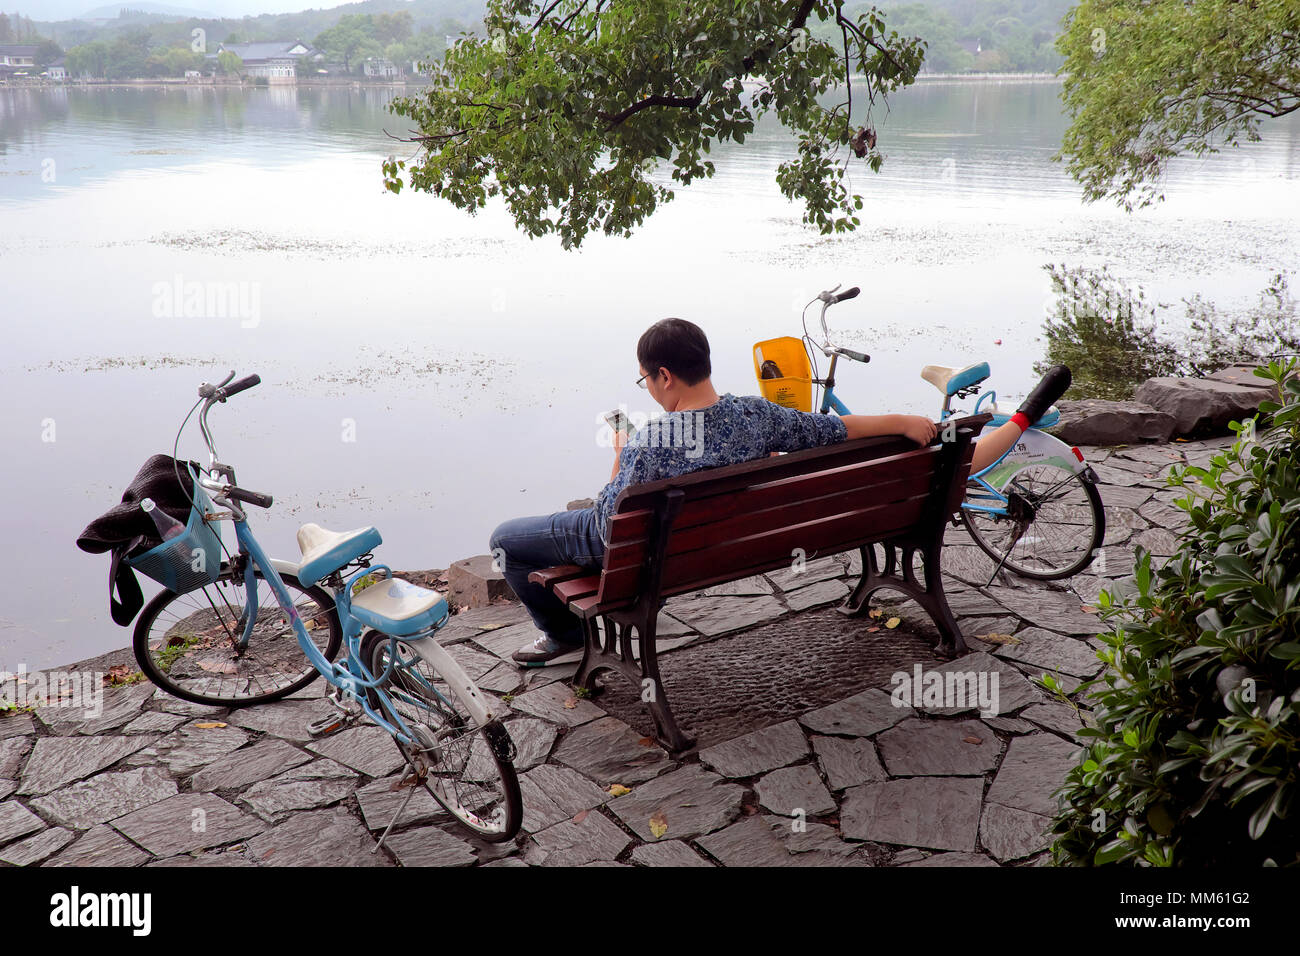 Surf homme / contrôle son téléphone portable tandis que sa petite amie prend un power nap, Lac de l'Ouest, à Hangzhou, Province de Zhejiang, Chine Banque D'Images